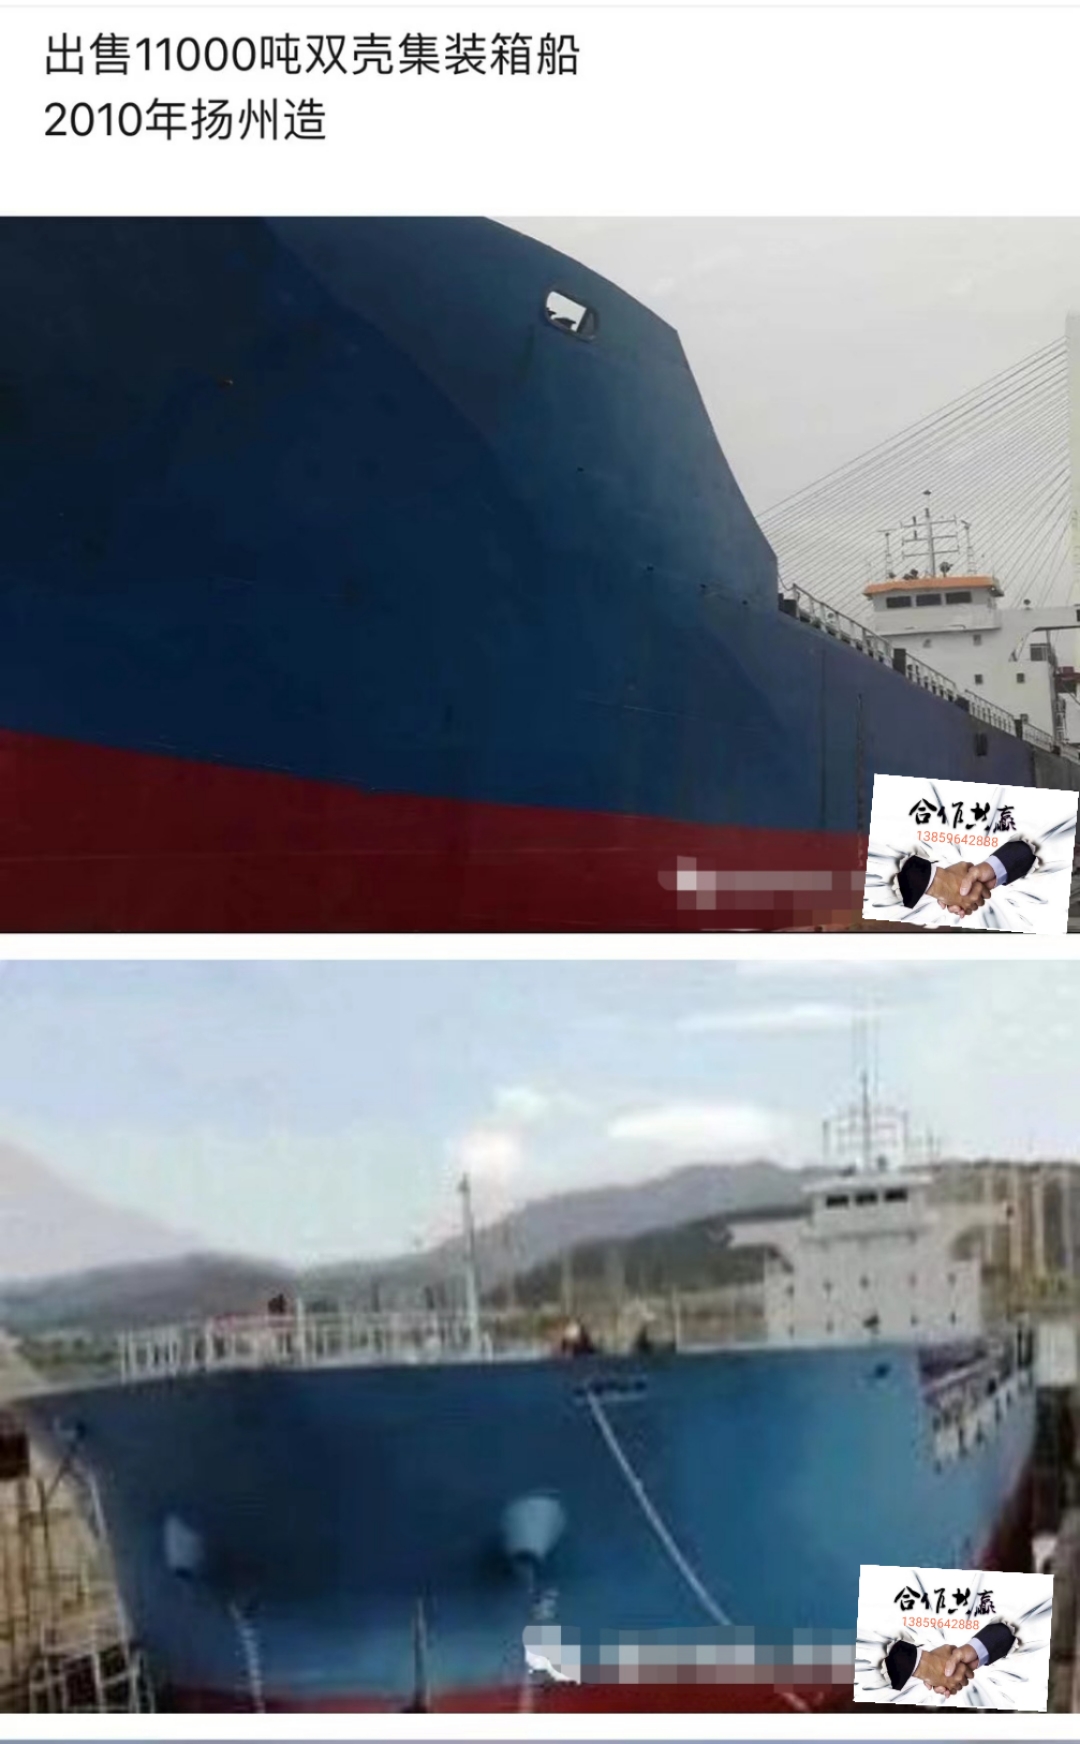 11000吨货船